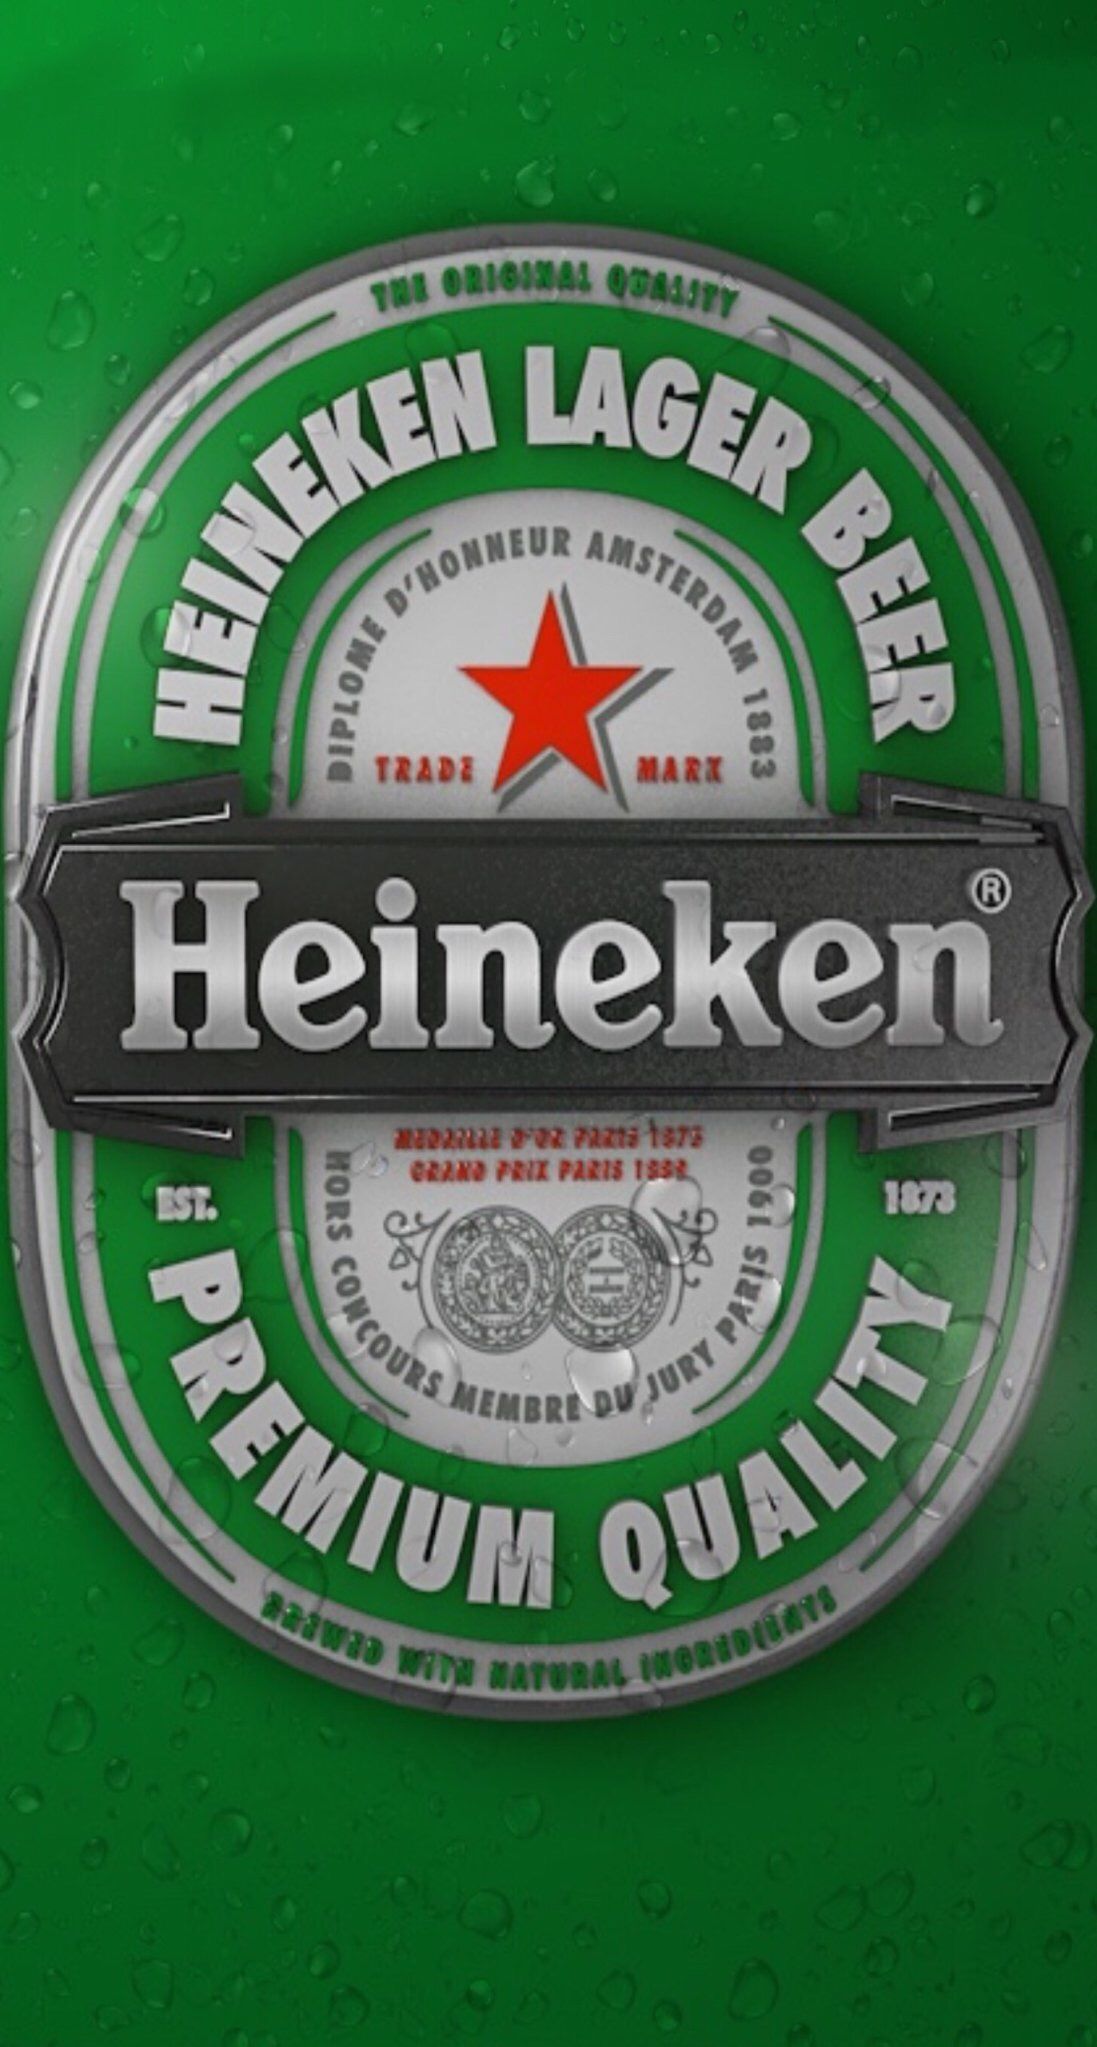 Bia. Logos de cerveja, Pôster de cerveja, Heineken